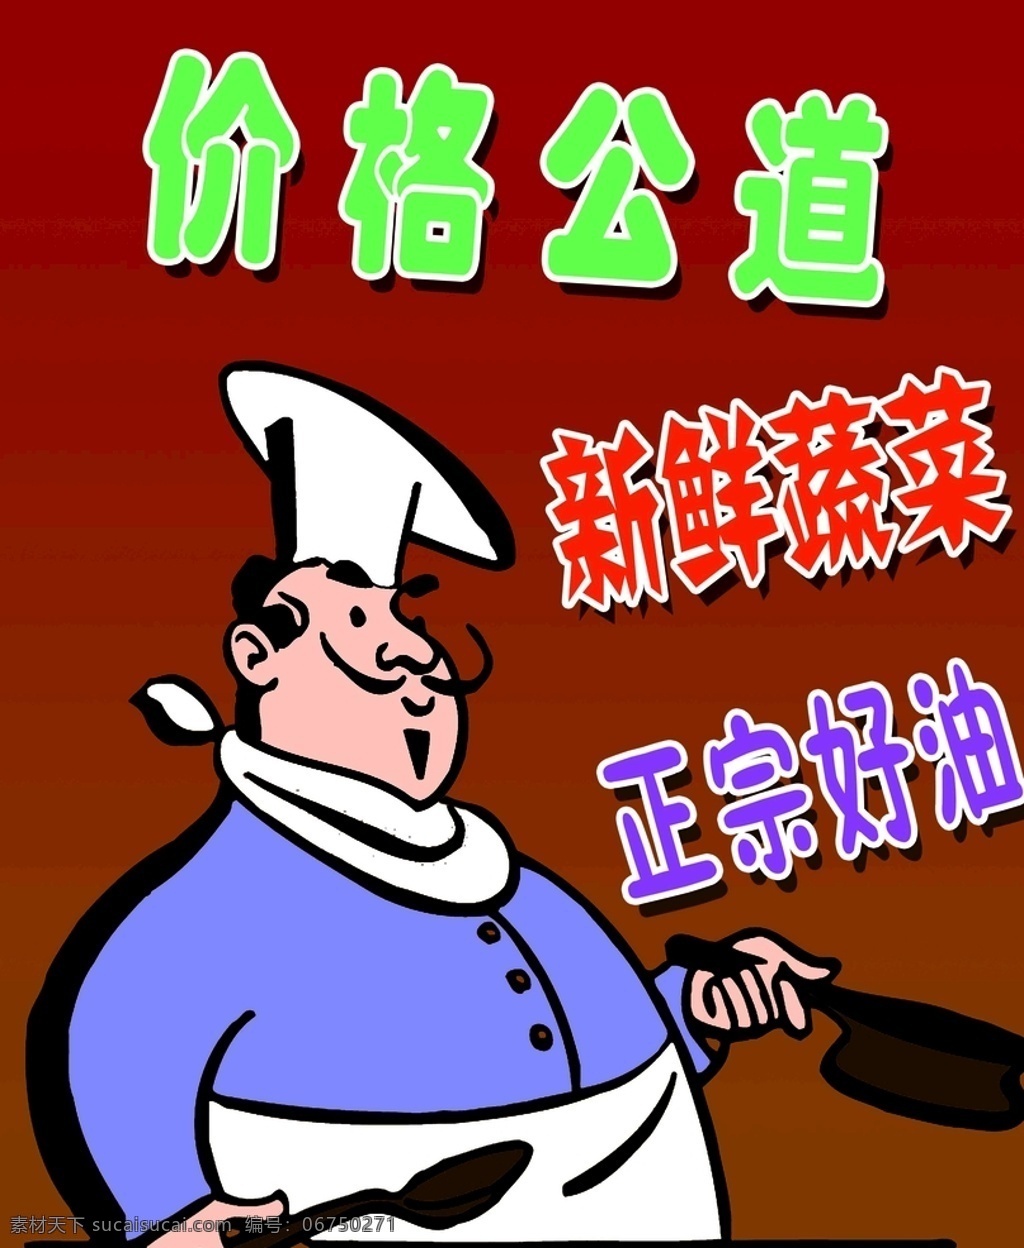 卡通厨师元素 深色背景图 红色 紫色 绿色文字 卡通设计